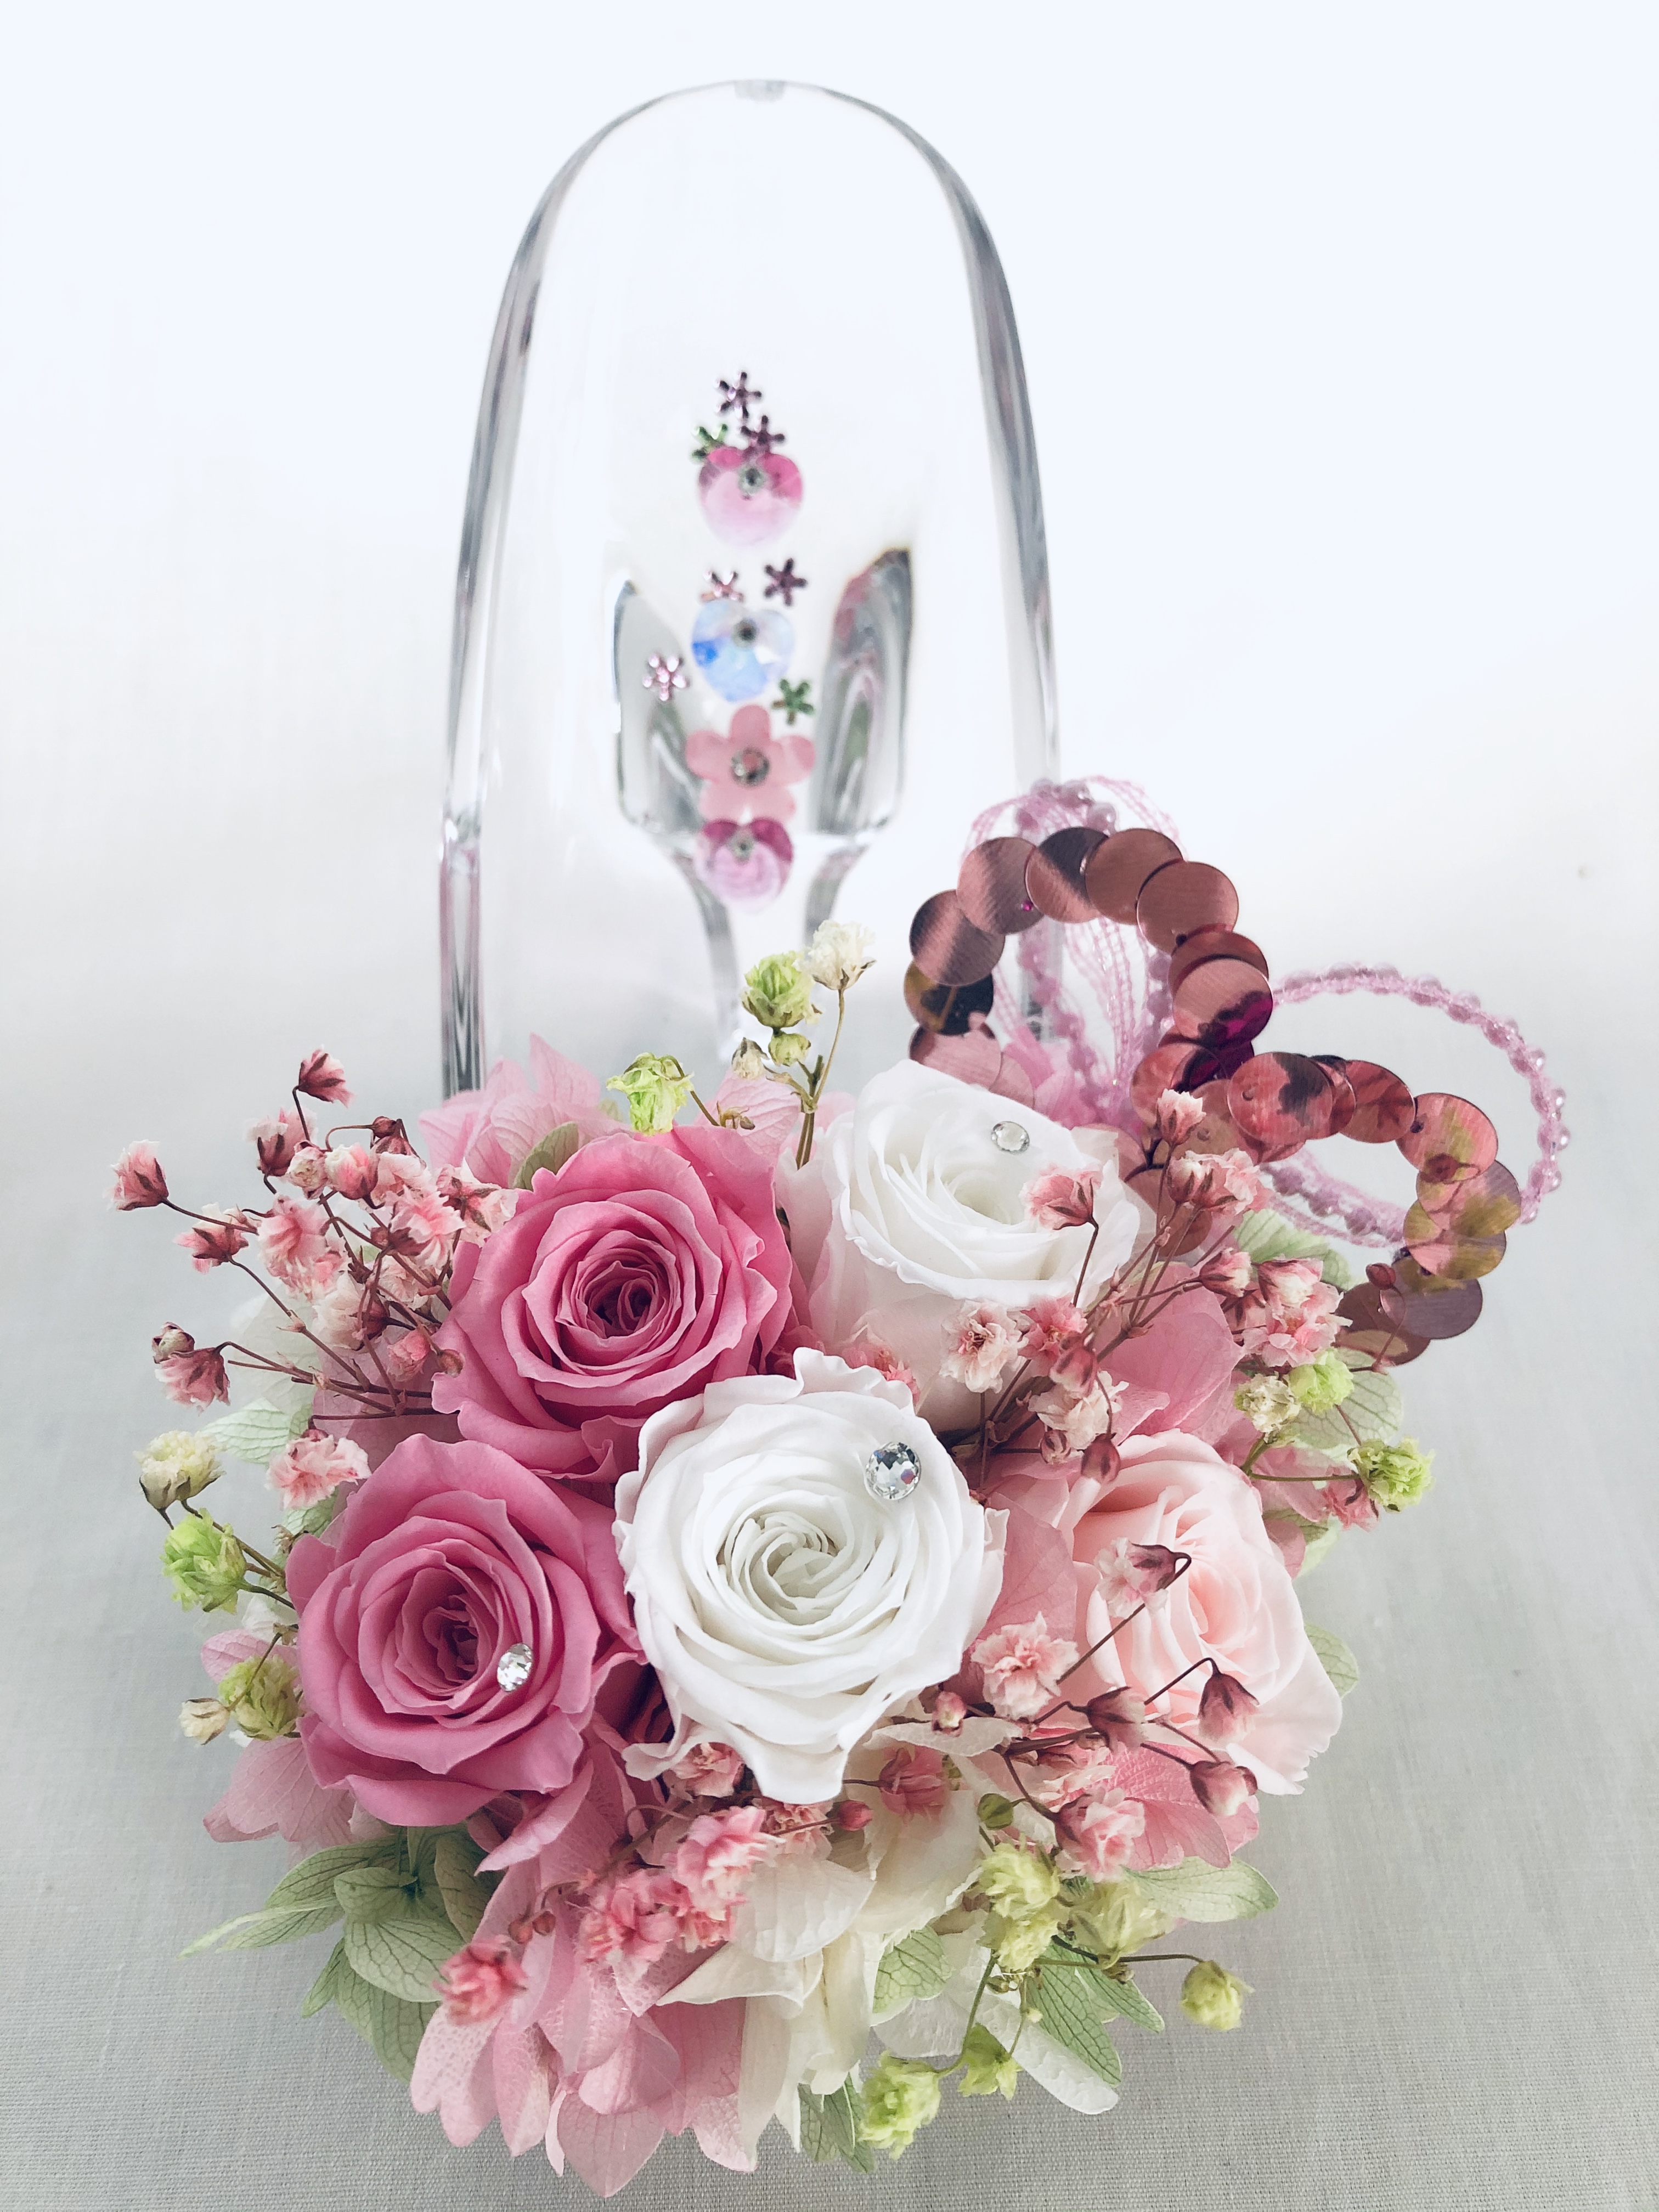 プリザーブドフラワー ガラスの靴シリーズ ピンクと白の可憐なミニ薔薇とハートたちの楽しい時間 Iichi ハンドメイド クラフト作品 手仕事品の通販